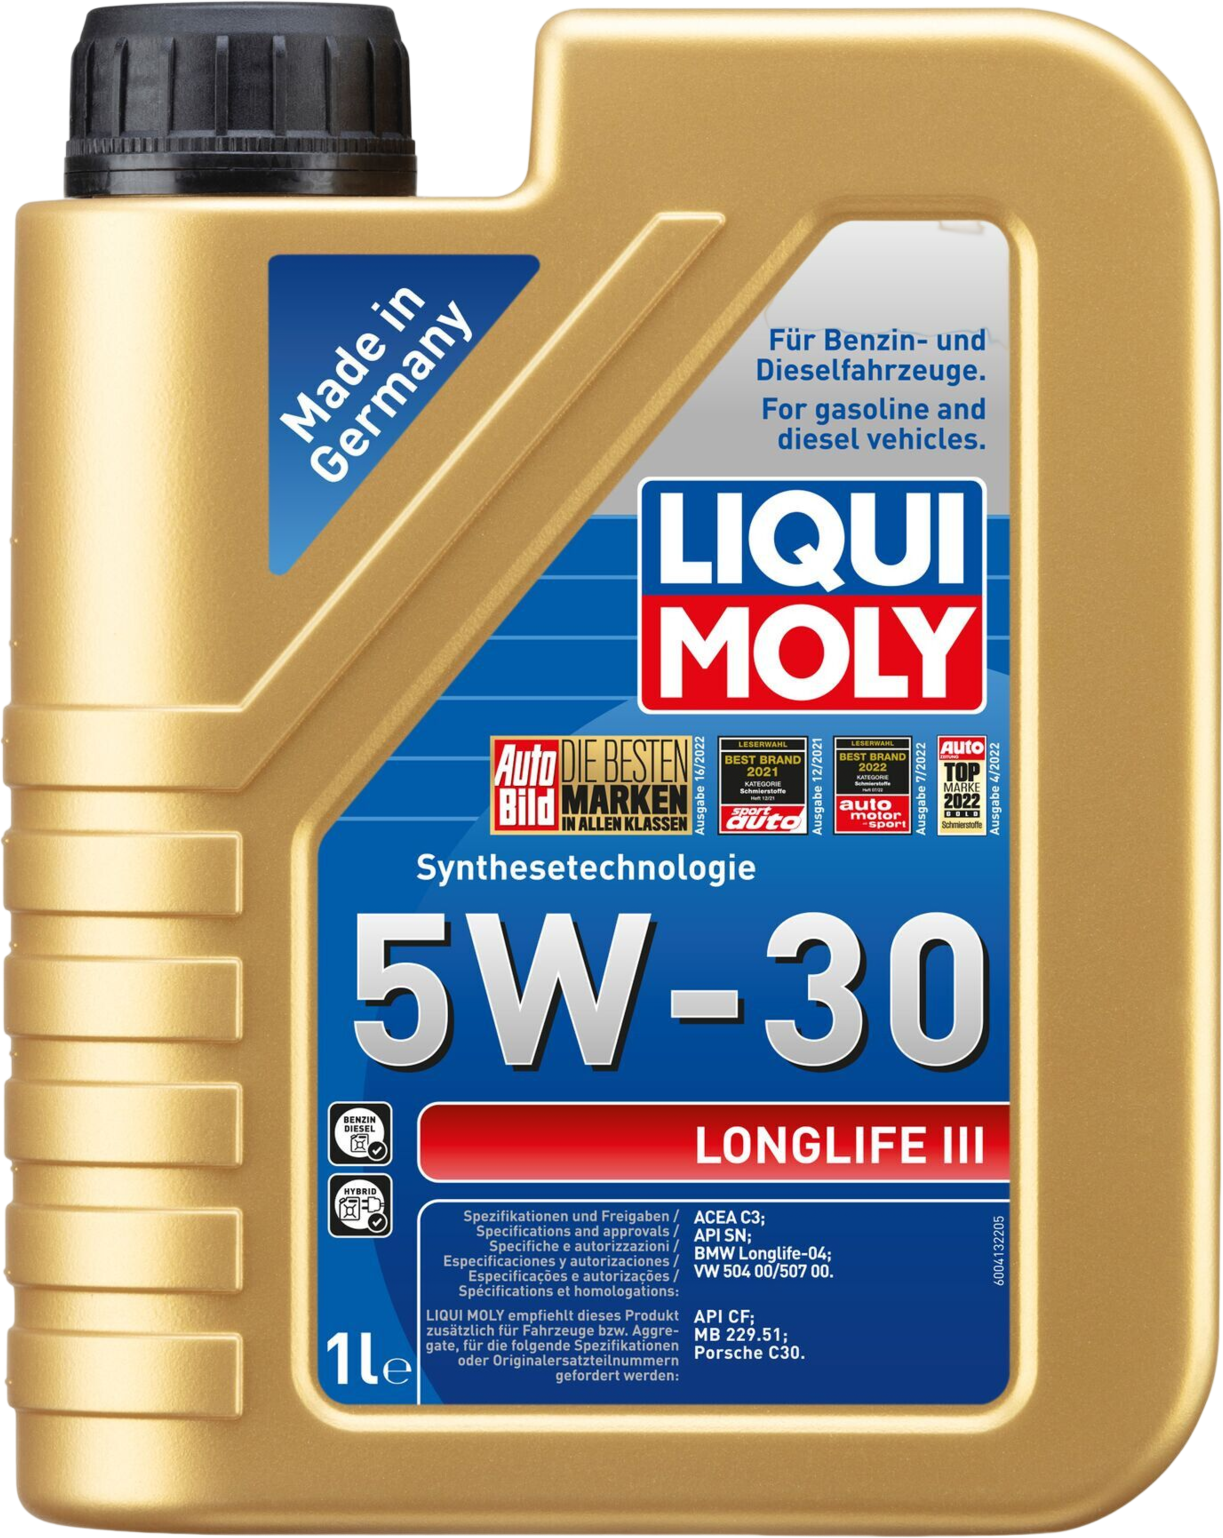 Liqui Moly Longlife III 5W-30, 1 lt